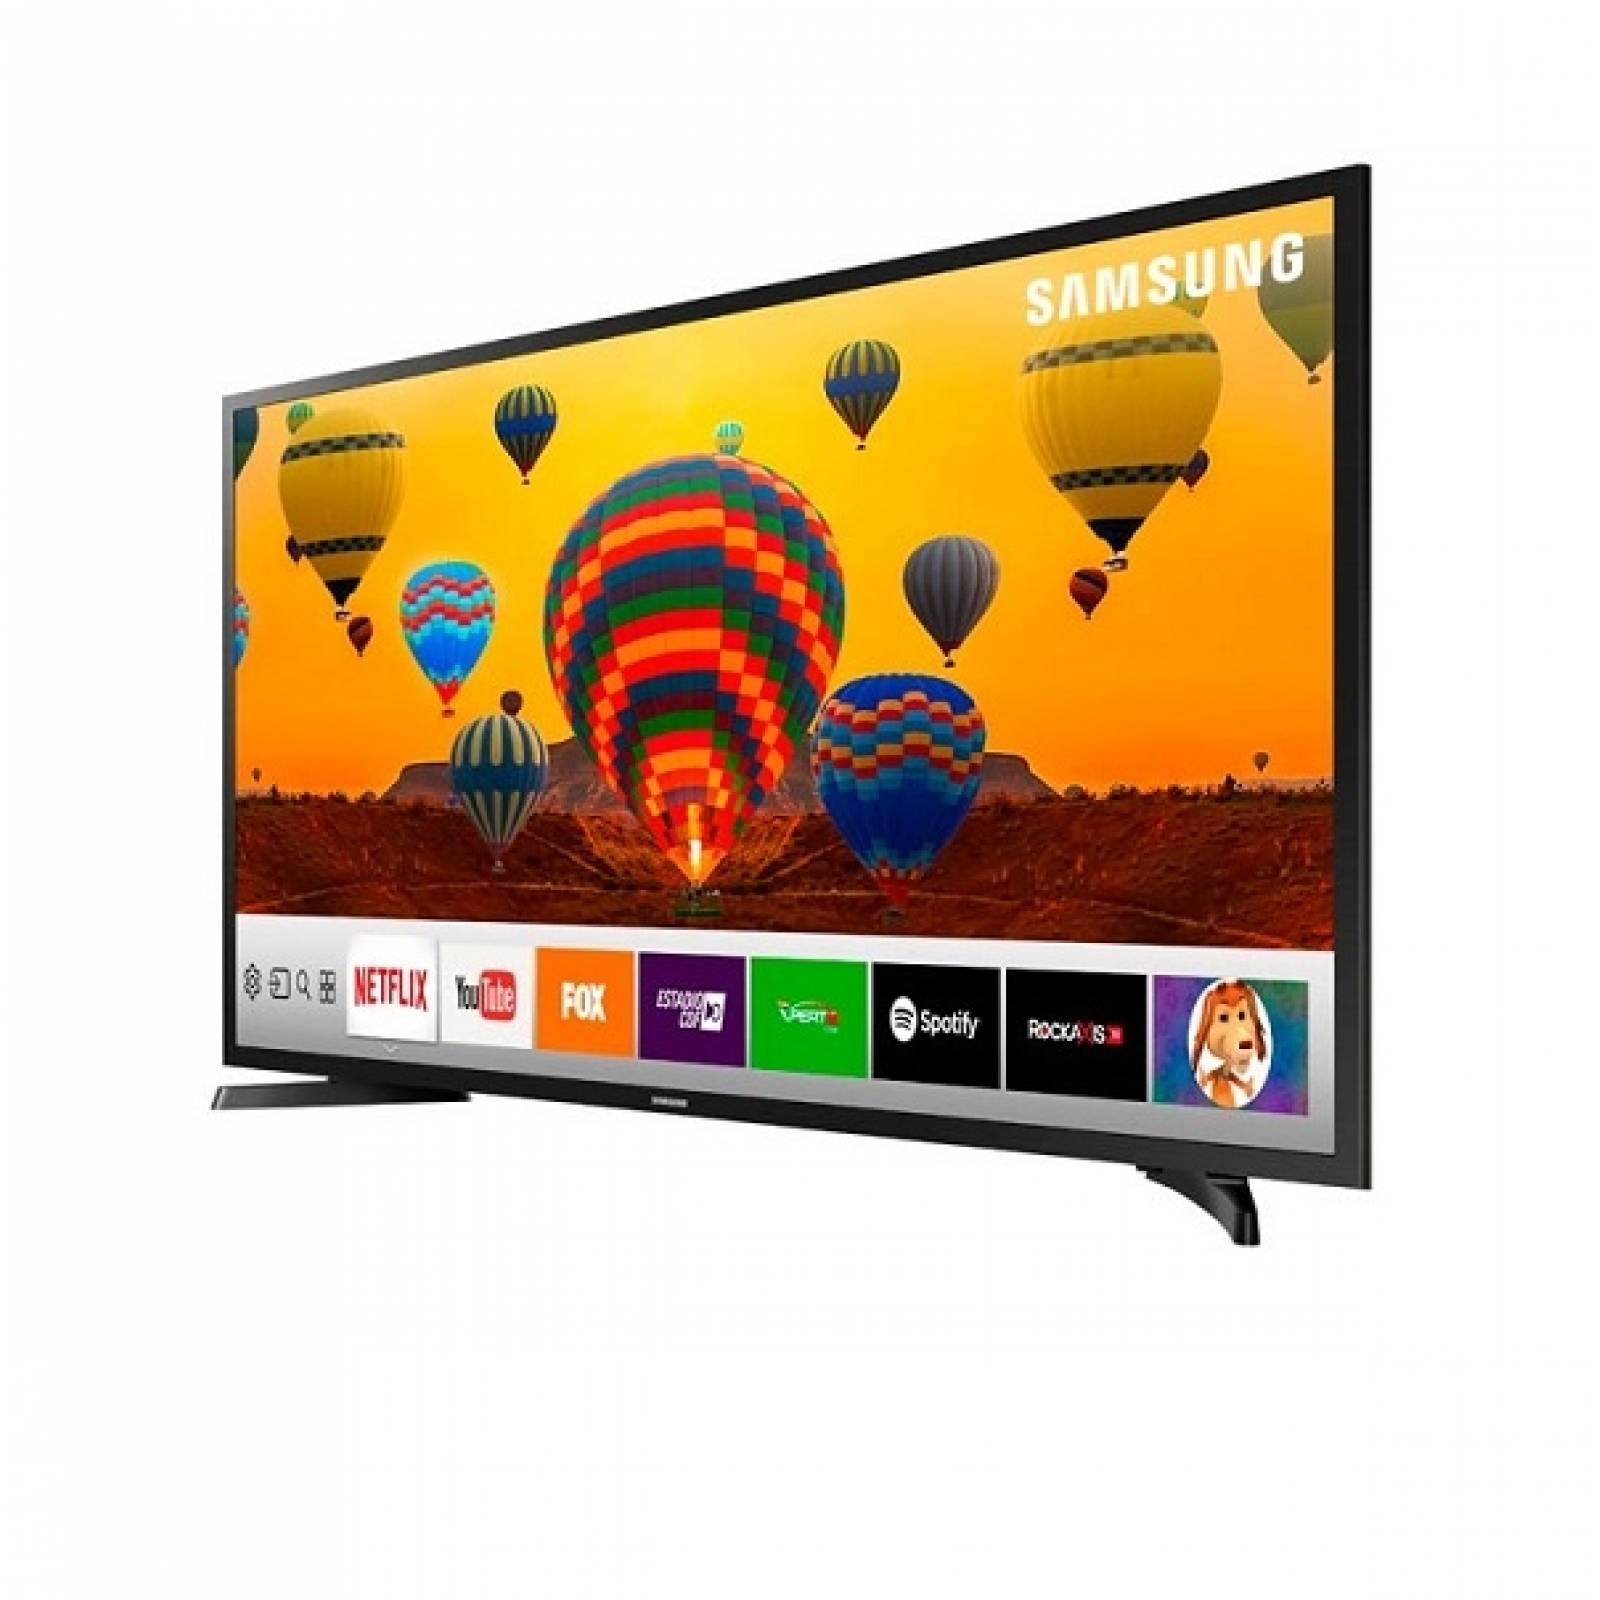 Smart TV Samsung 32 HD Wi-Fi USB HDMI UN32J4290